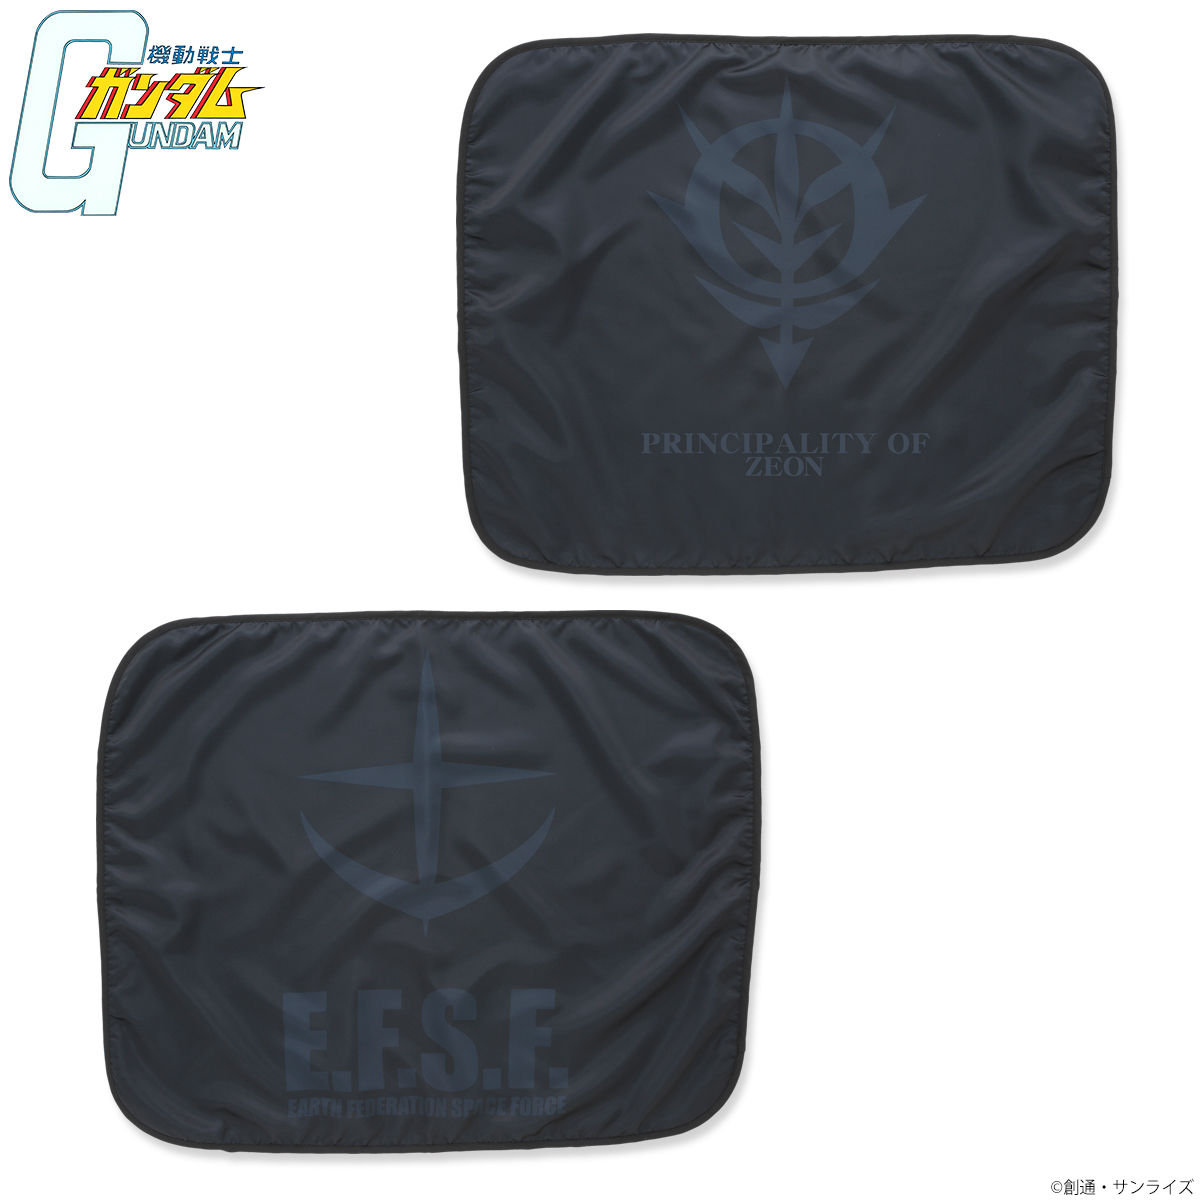 Mobile Suit Gundam Black Emblem Blanket